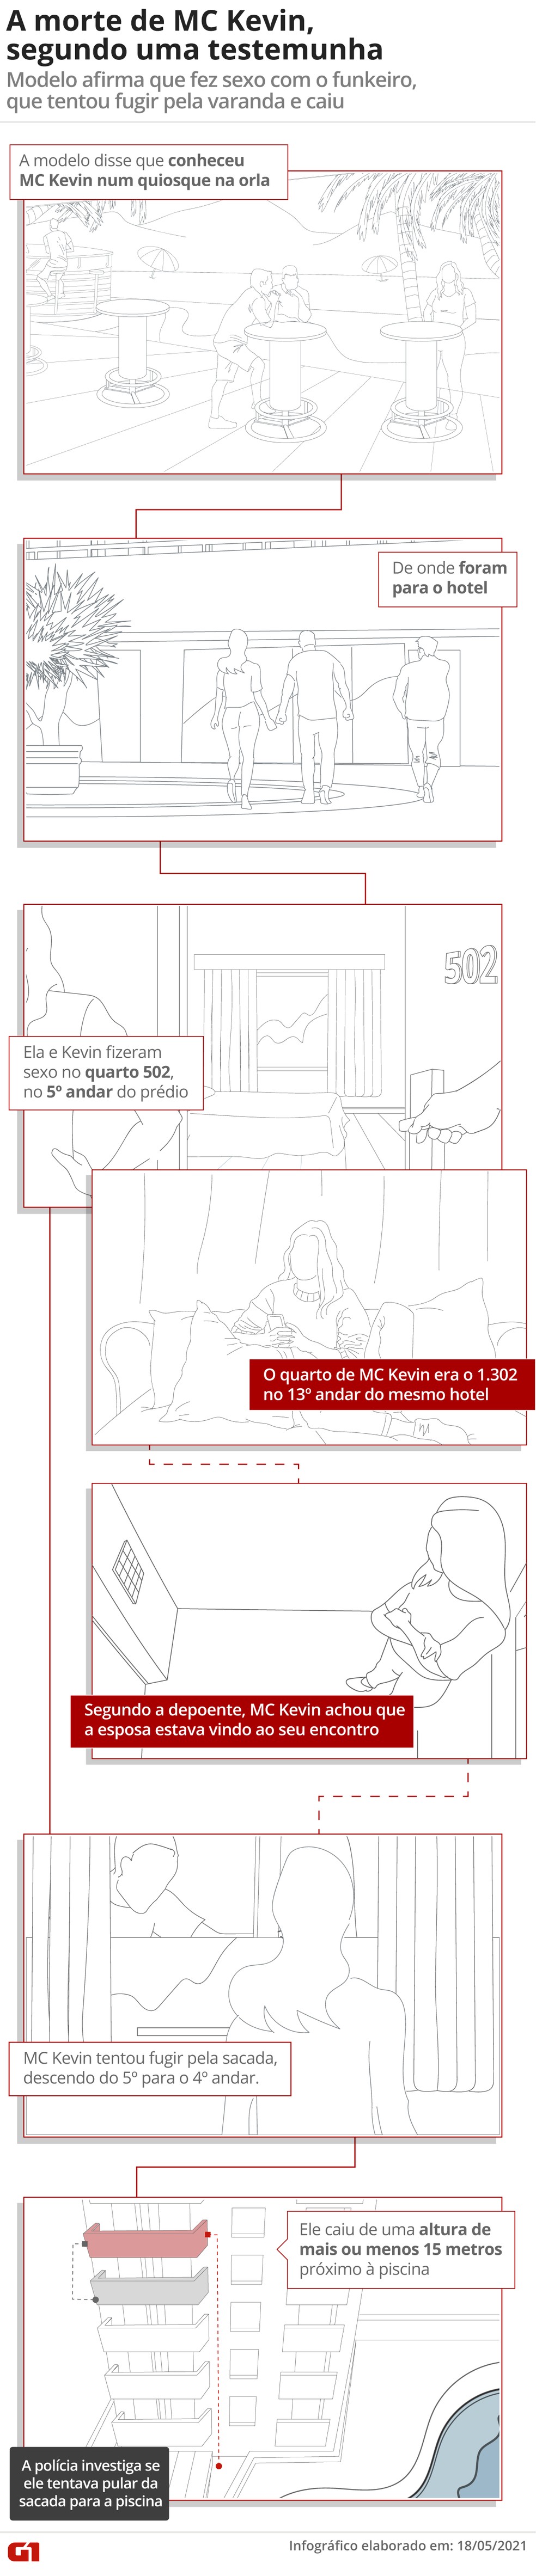 Momentos que antecederam a queda de MC Kevin, de acordo com depoimento da testemunha — Foto: Infográfico: Guilherme Luiz Pinheiro e Daniel Ivanaskas/G1